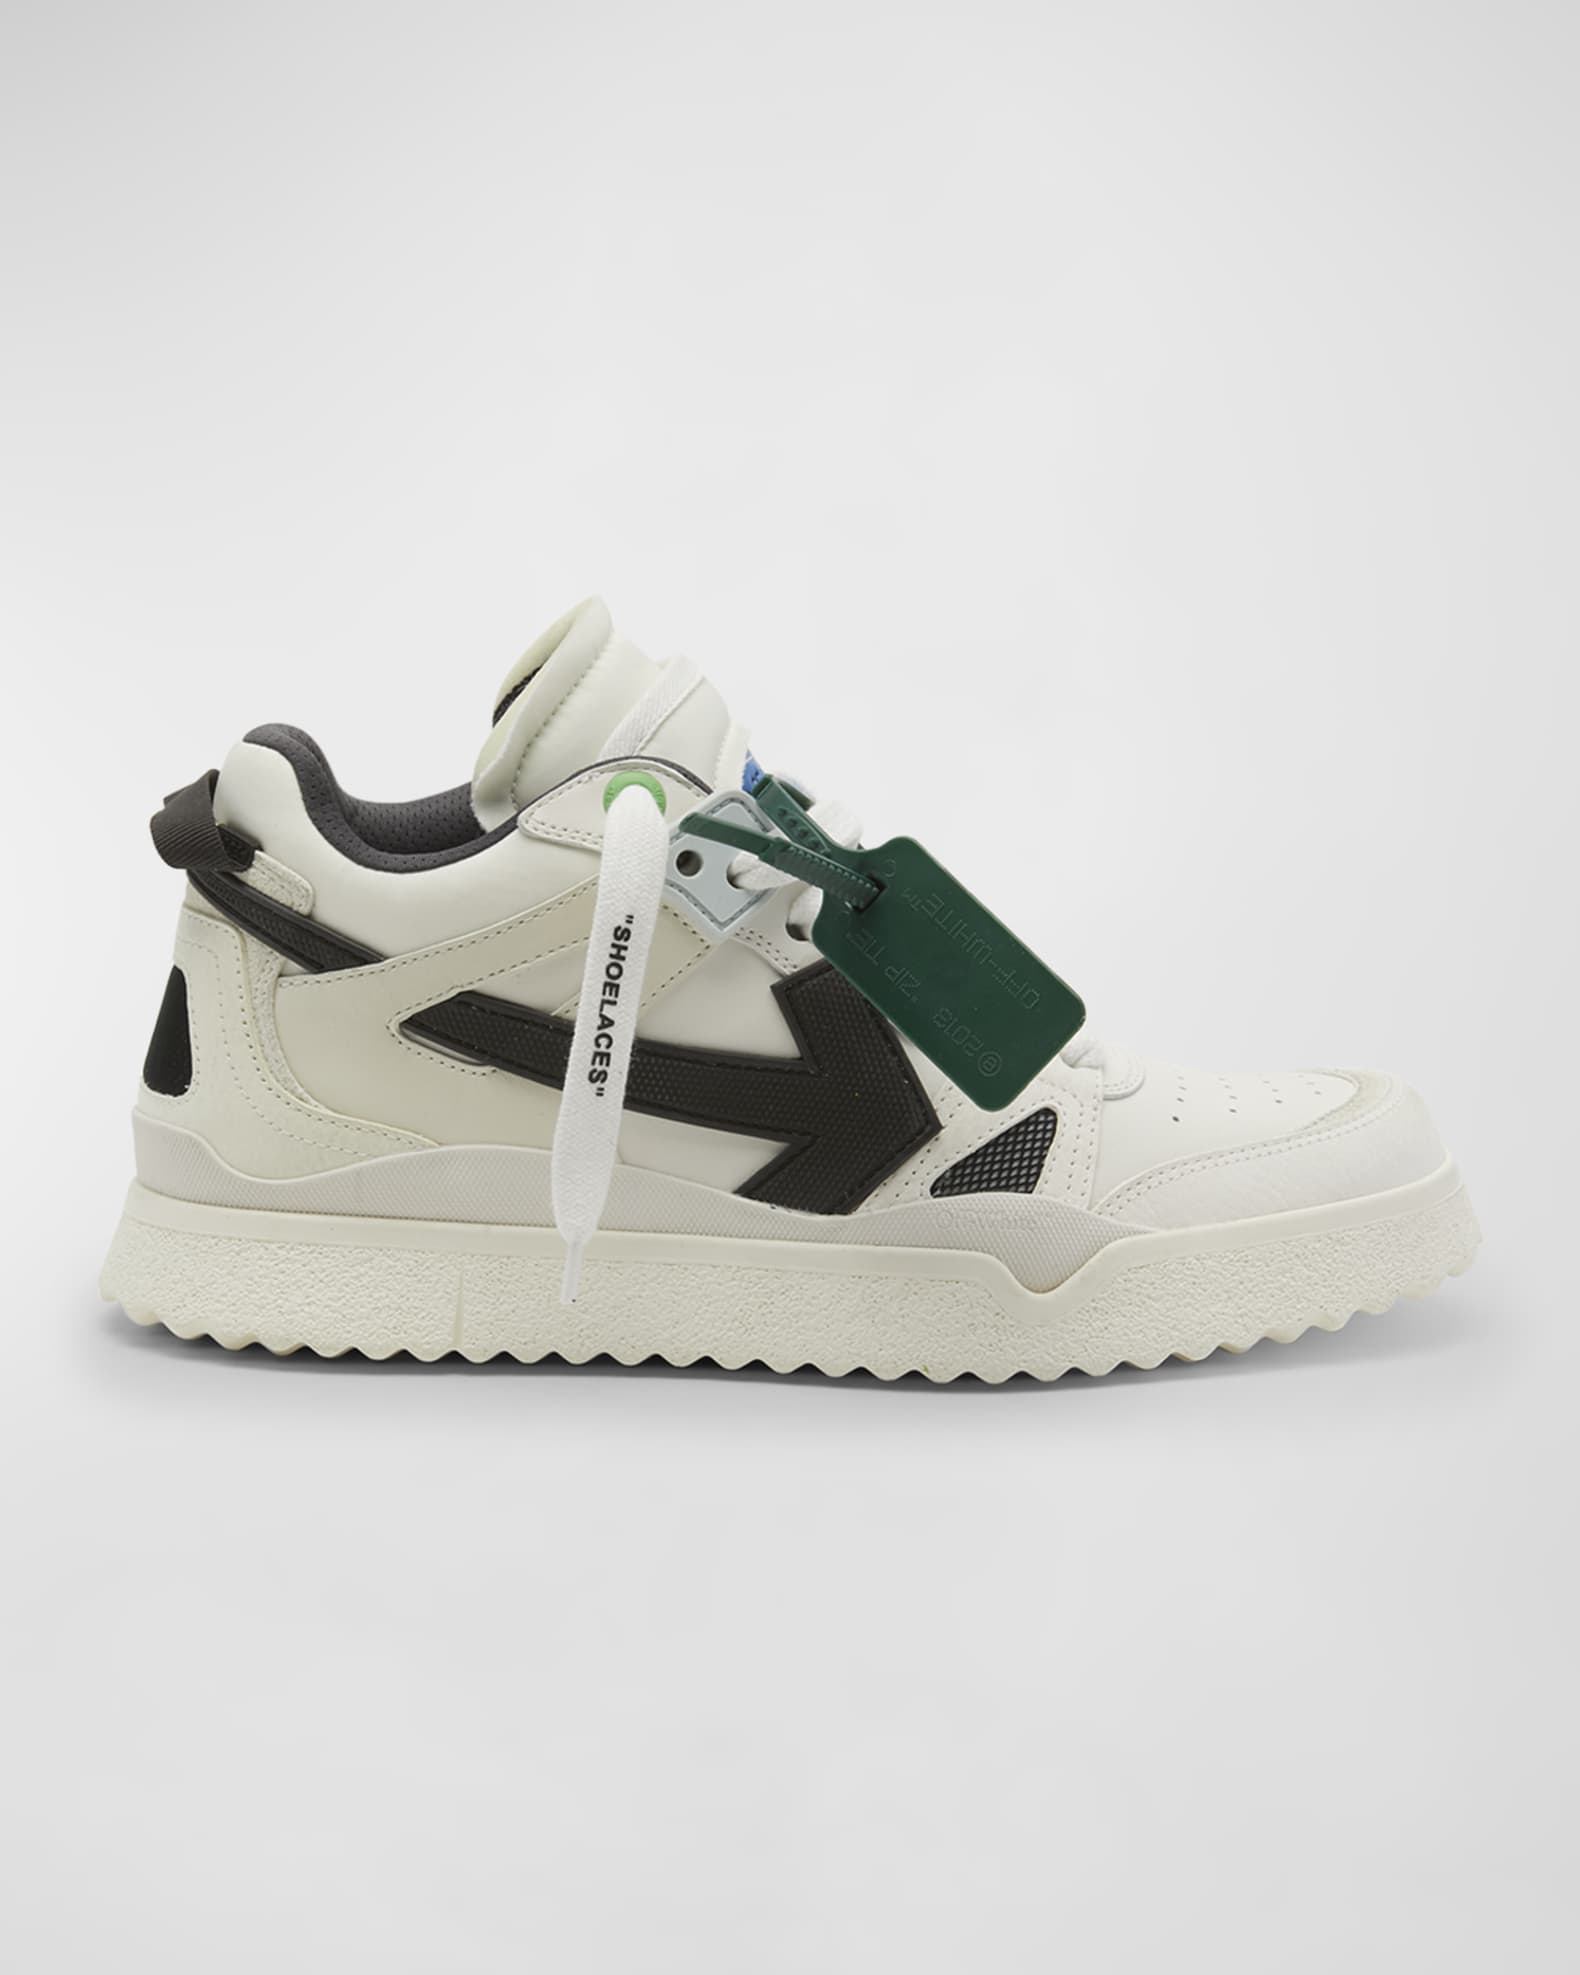 Louis Vuitton X Jordan 4 Retro Sneakers Green/White in Lagos